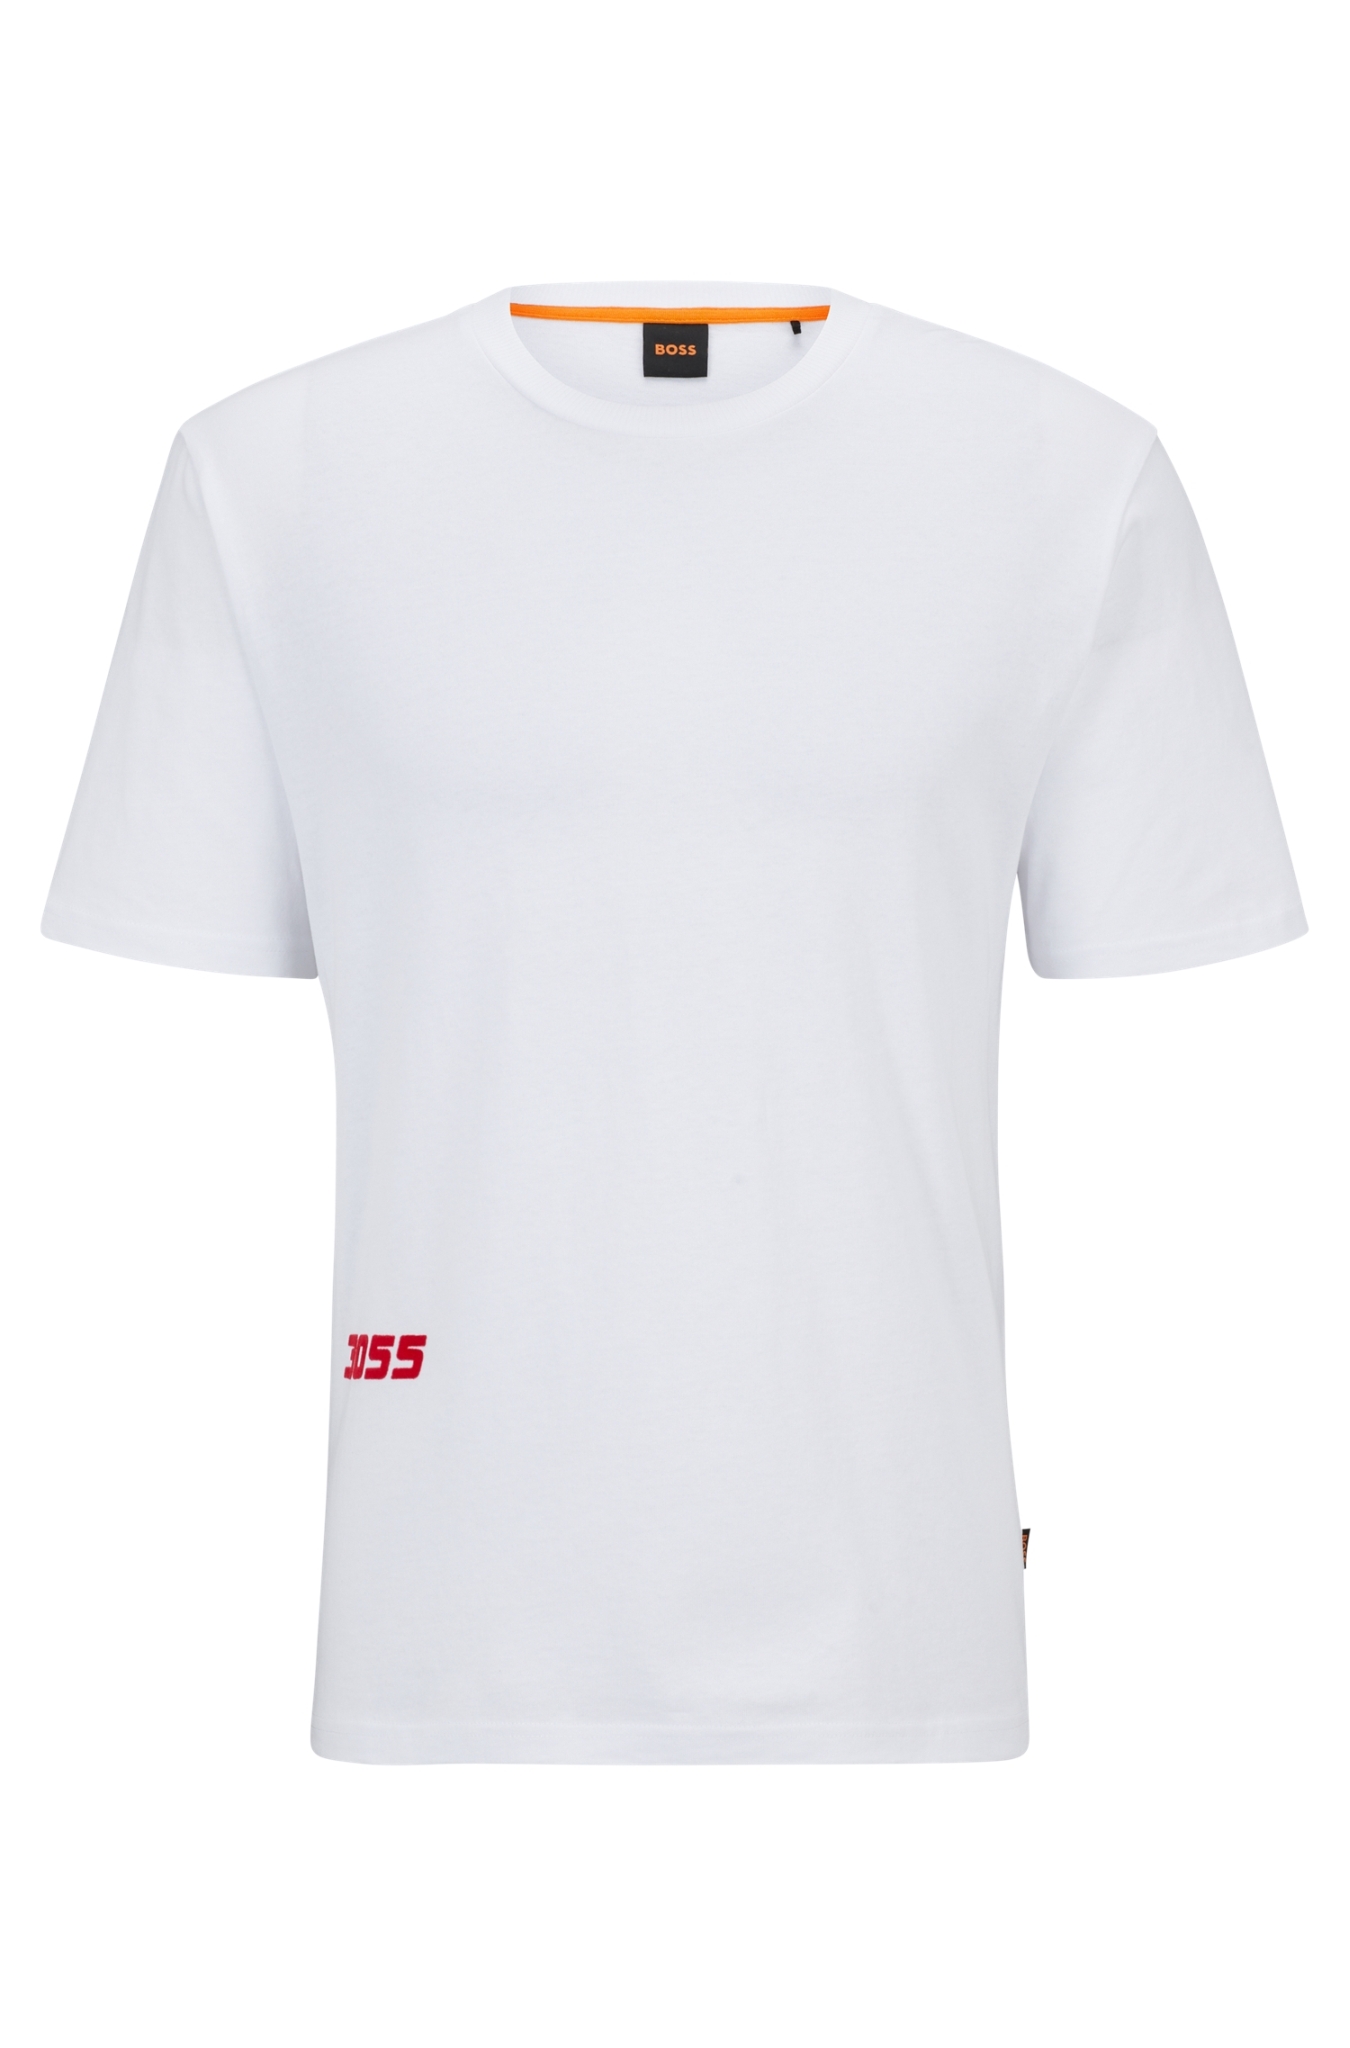 T-Shirt aus 10706364 mit Print Rennsport-Stil ORANGE kaufen | BOSS Baumwolle Relaxed-Fit im WÖHRL